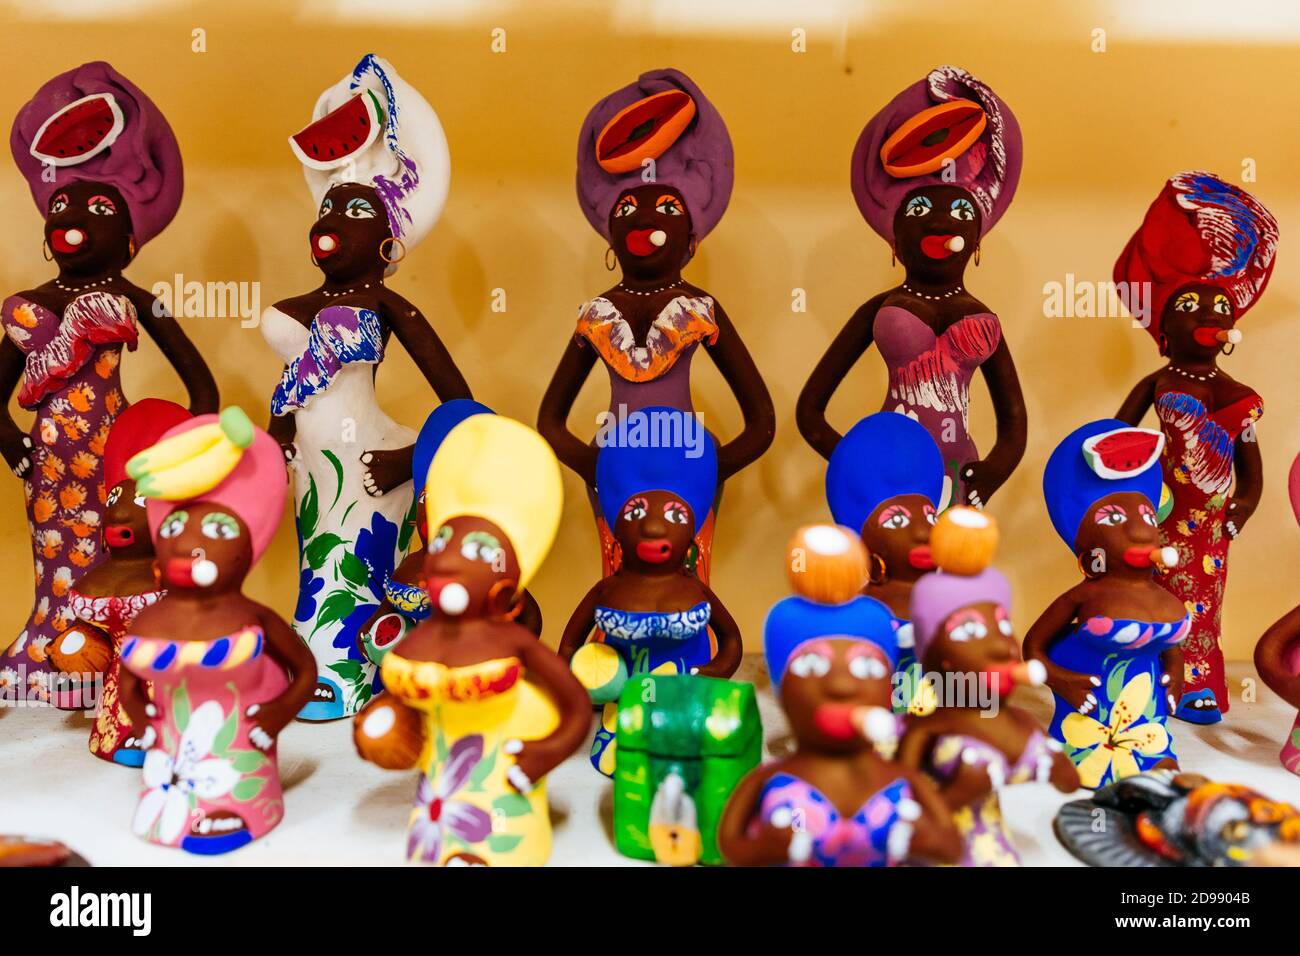 Personnages en argile inspirés de la culture afro-cubaine à vendre comme souvenir pour les touristes. Trinidad, Sancti Spíritus, Cuba, Amérique latine et Caraïbes Banque D'Images